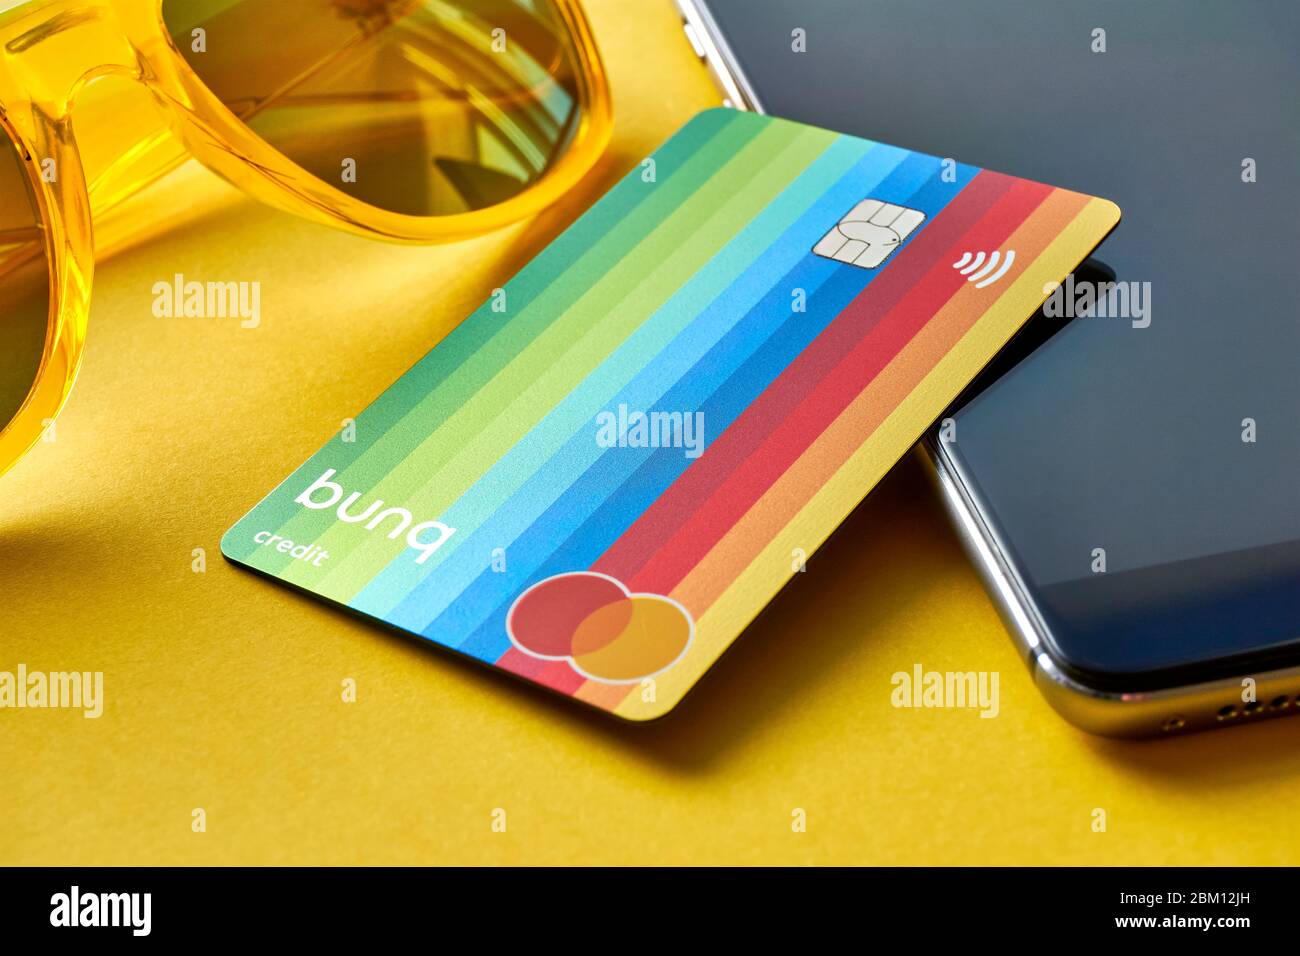 Franeker, Niederlande - 1. März 2020: Die bunq Travel Card ist eine Prepaid Mastercard Kreditkarte. Bunq ist eine niederländische, international tätige Neobank. Stockfoto